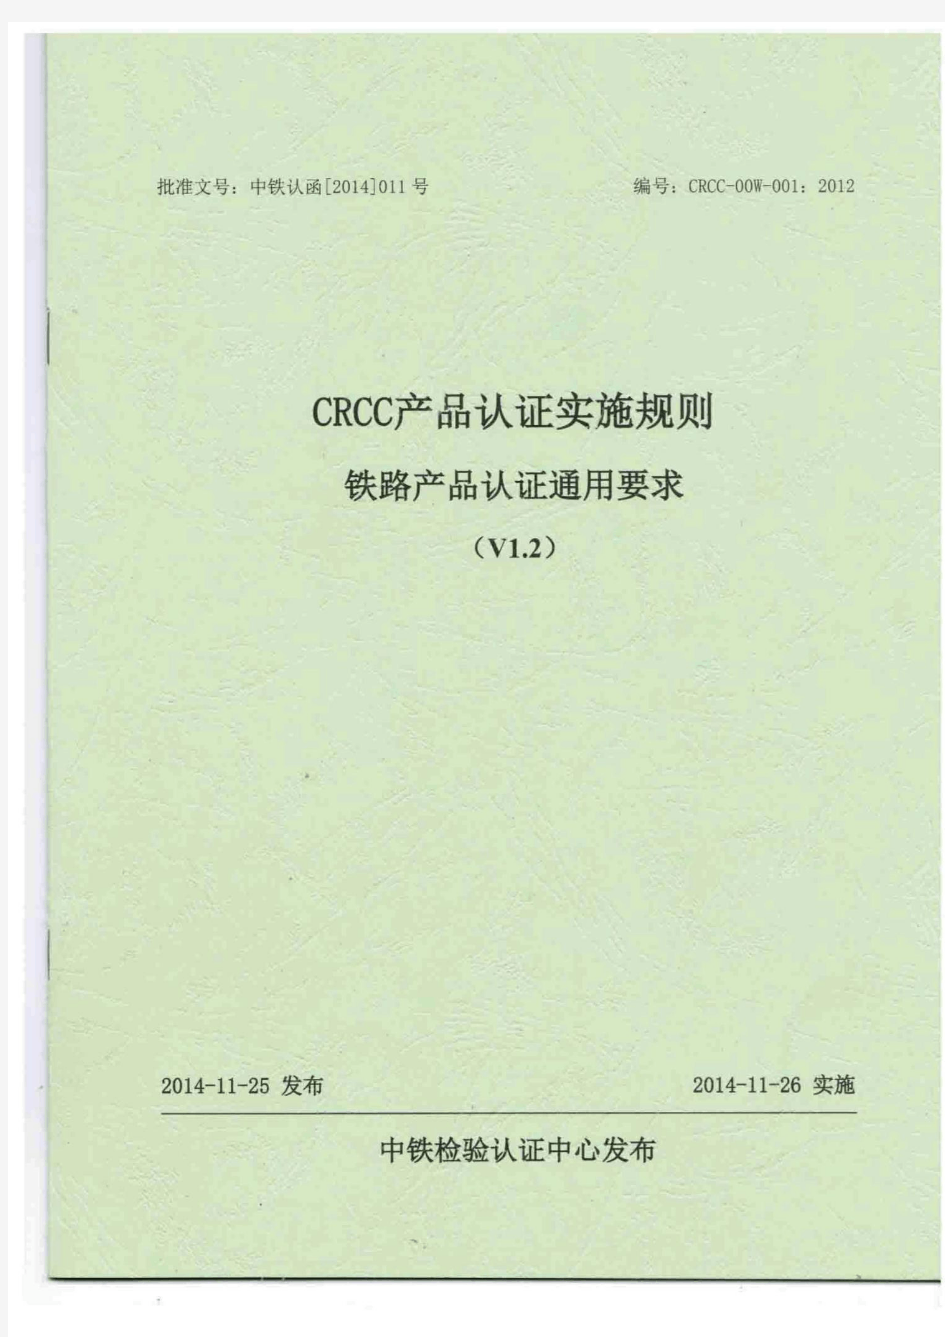 CRCC产品认证实施规则-铁路产品认证通用要求【V1.2】